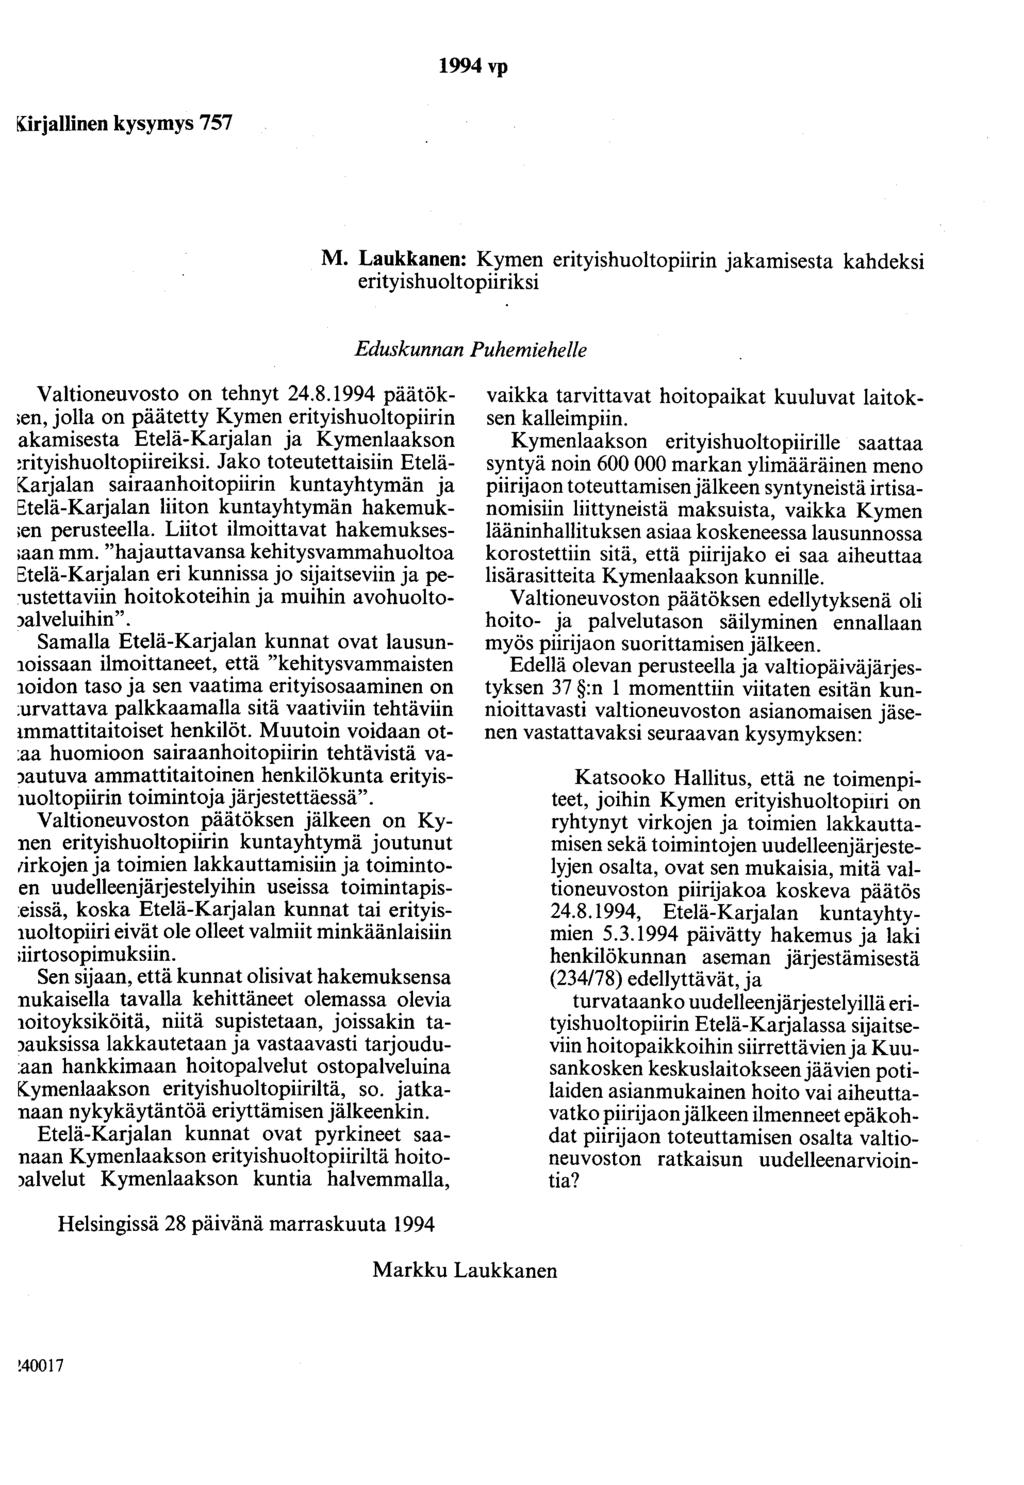 1994 vp [(irjallinen kysymys 757 M. Laukkanen: Kymen erityishuoltopiirin jakamisesta kahdeksi erityishuoltopiiriksi Valtioneuvosto on tehnyt 24.8.